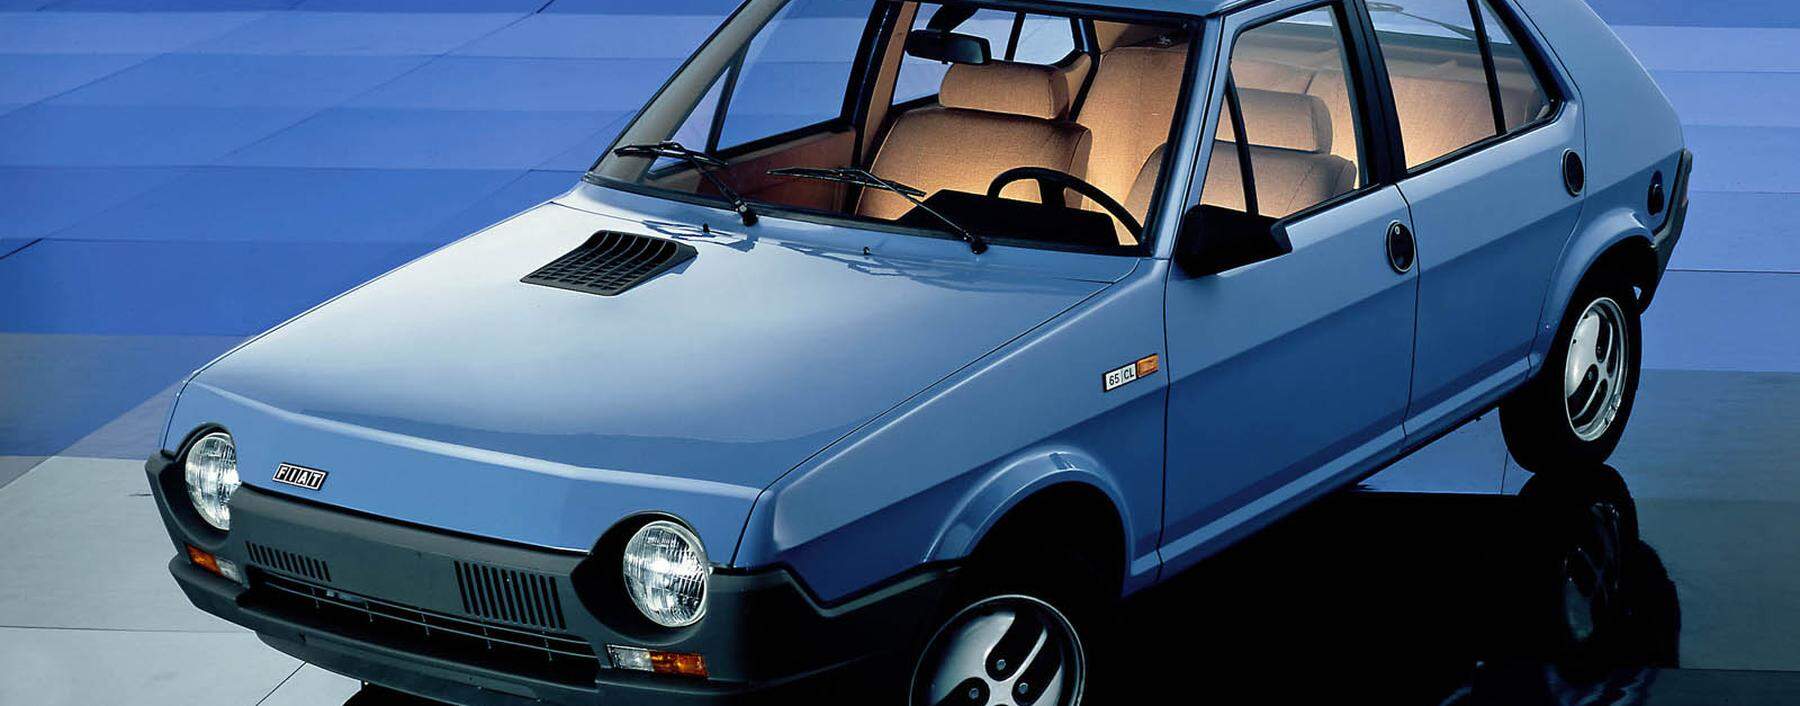 Extravaganz im Massenmarkt: Der Golf-Konkurrent Fiat Ritmo wurde ab 1978 gebaut.